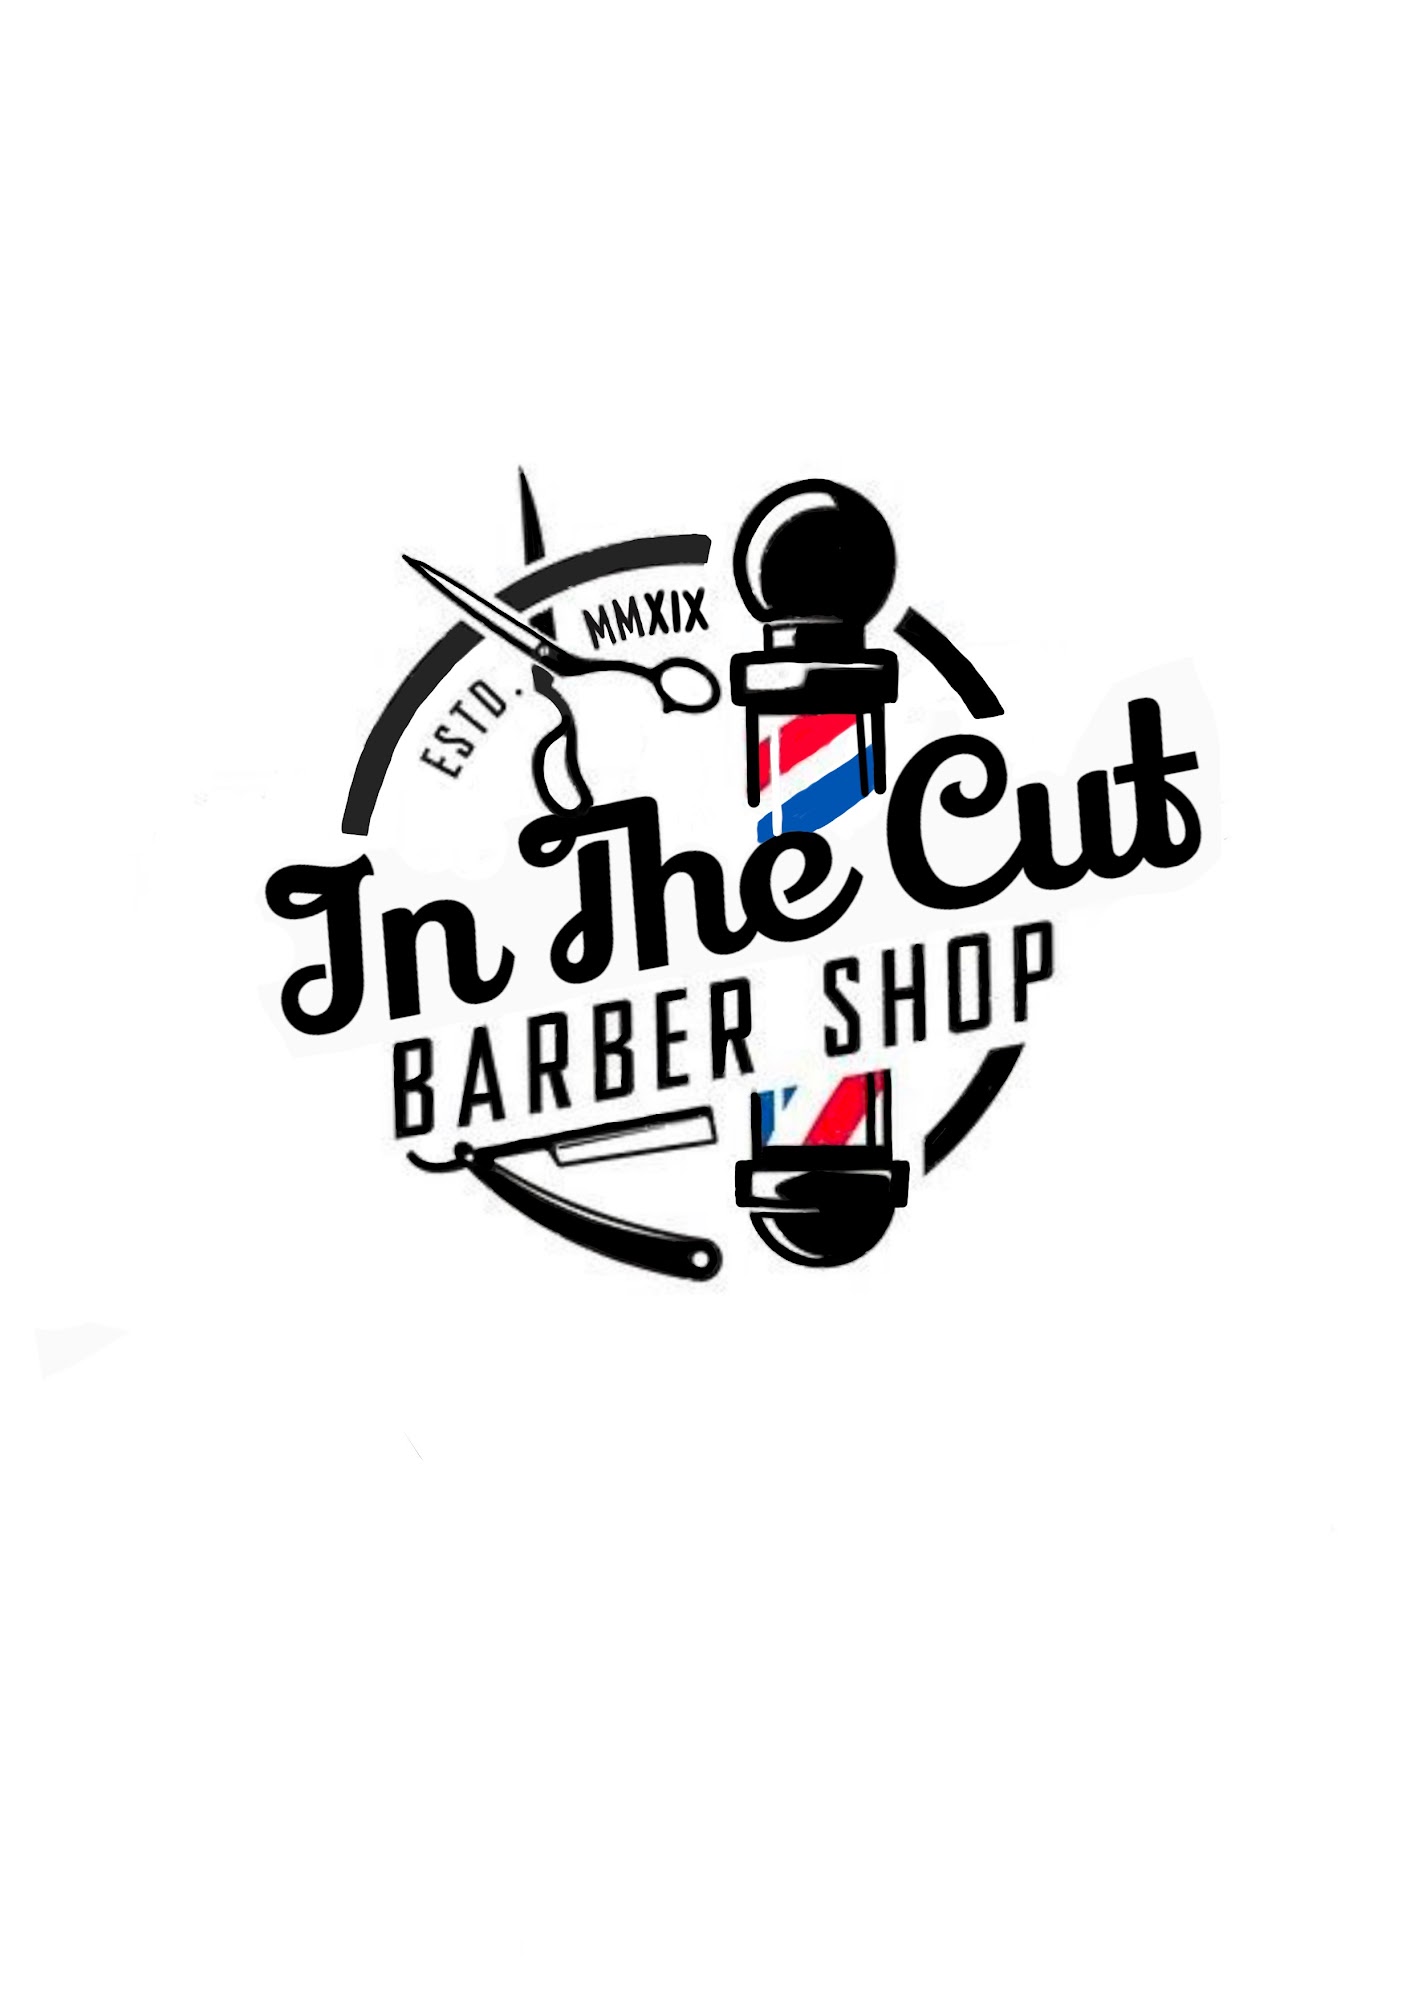 In The Cut Barbershop